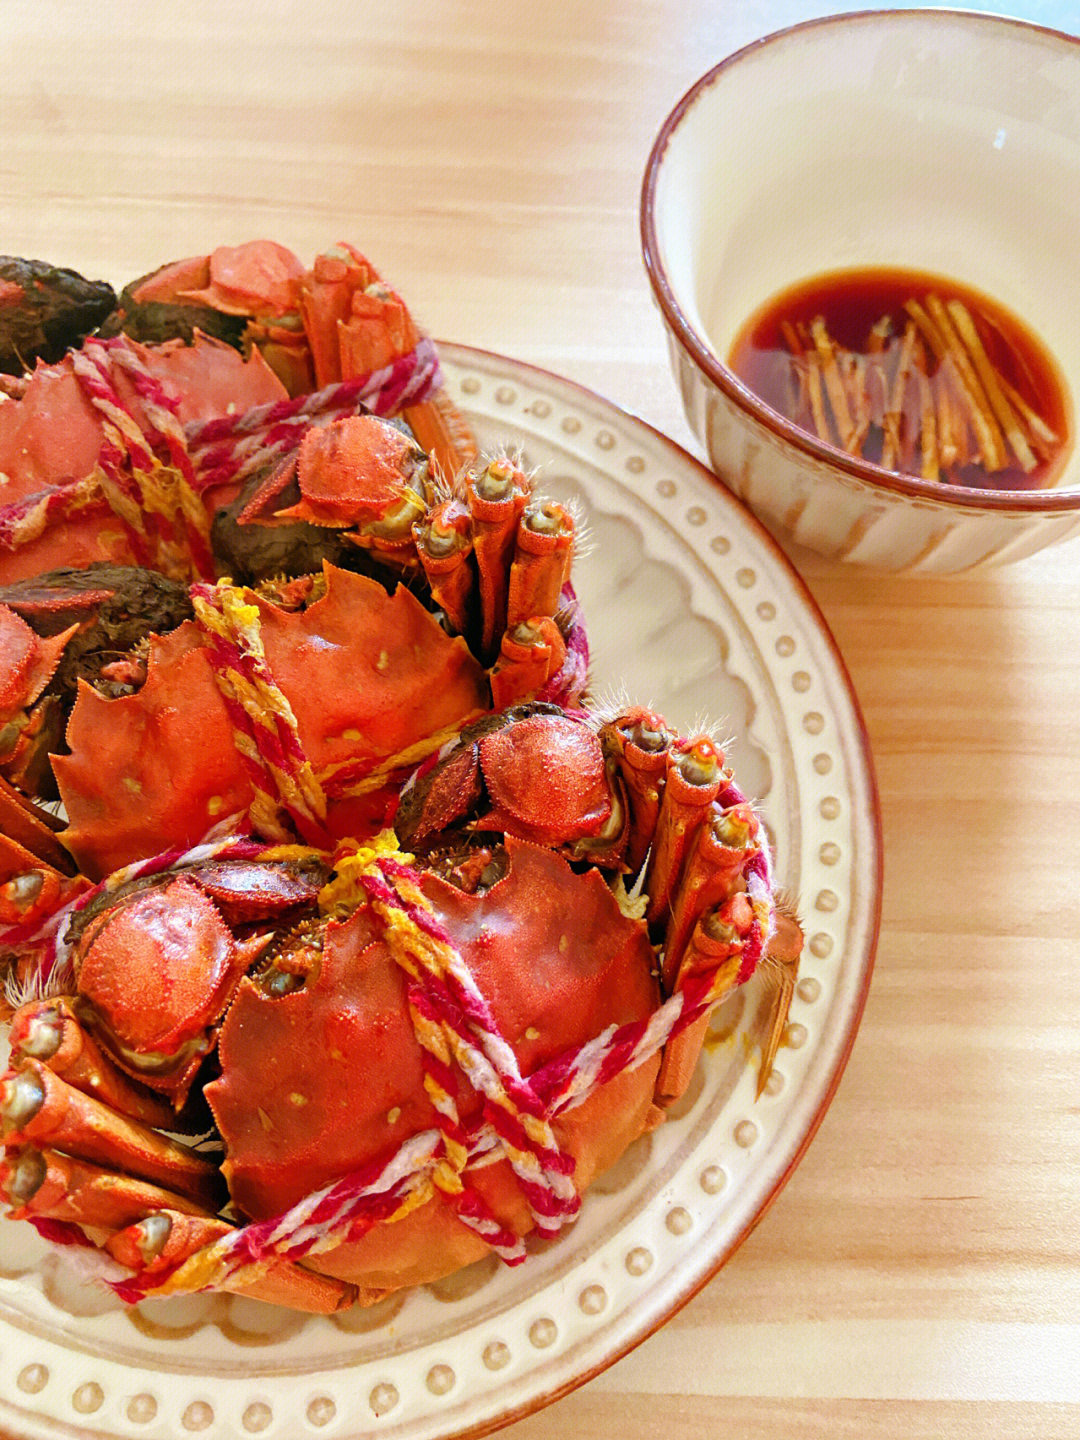 今天教大家一道简单的蒸大闸蟹做法:1,螃蟹洗净倒放入锅中,加入姜片和